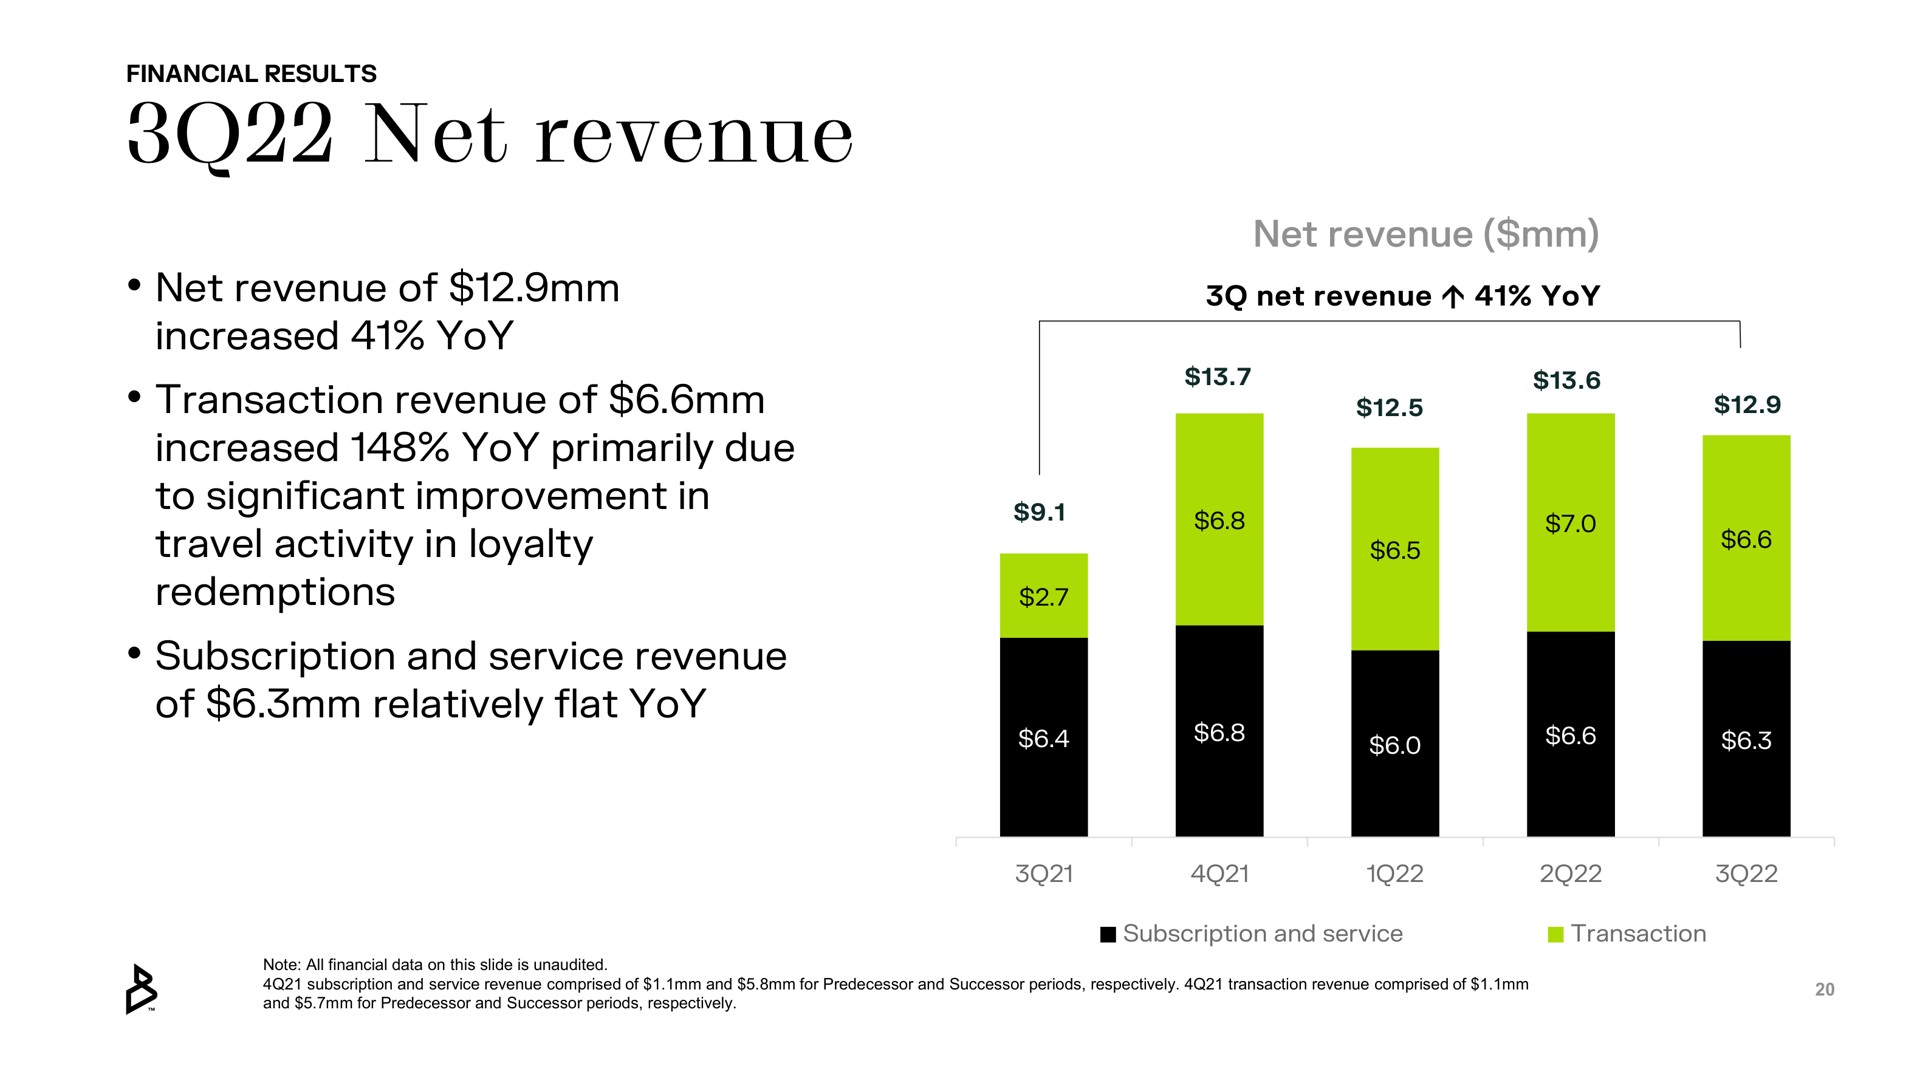 net revenue | Bakkt